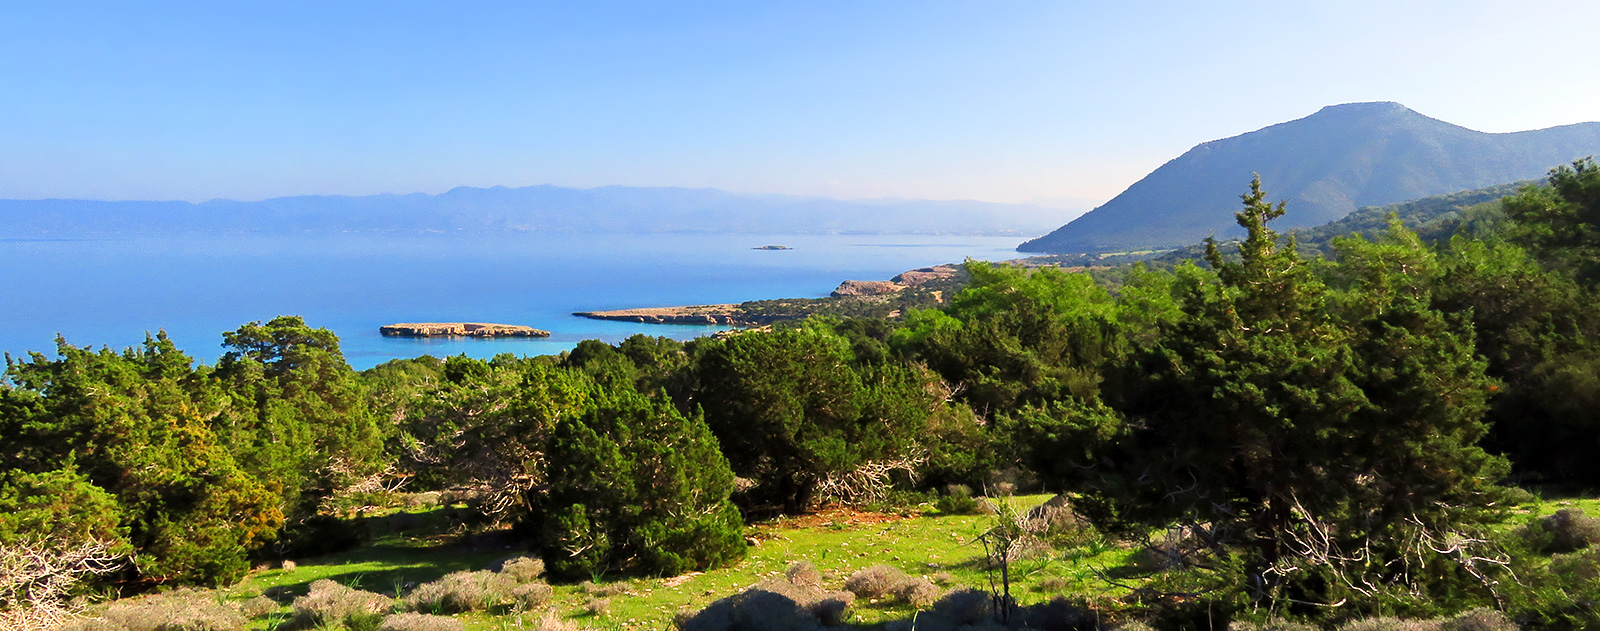 Cypr: Półwysep Akamas - śladami Afrodyty